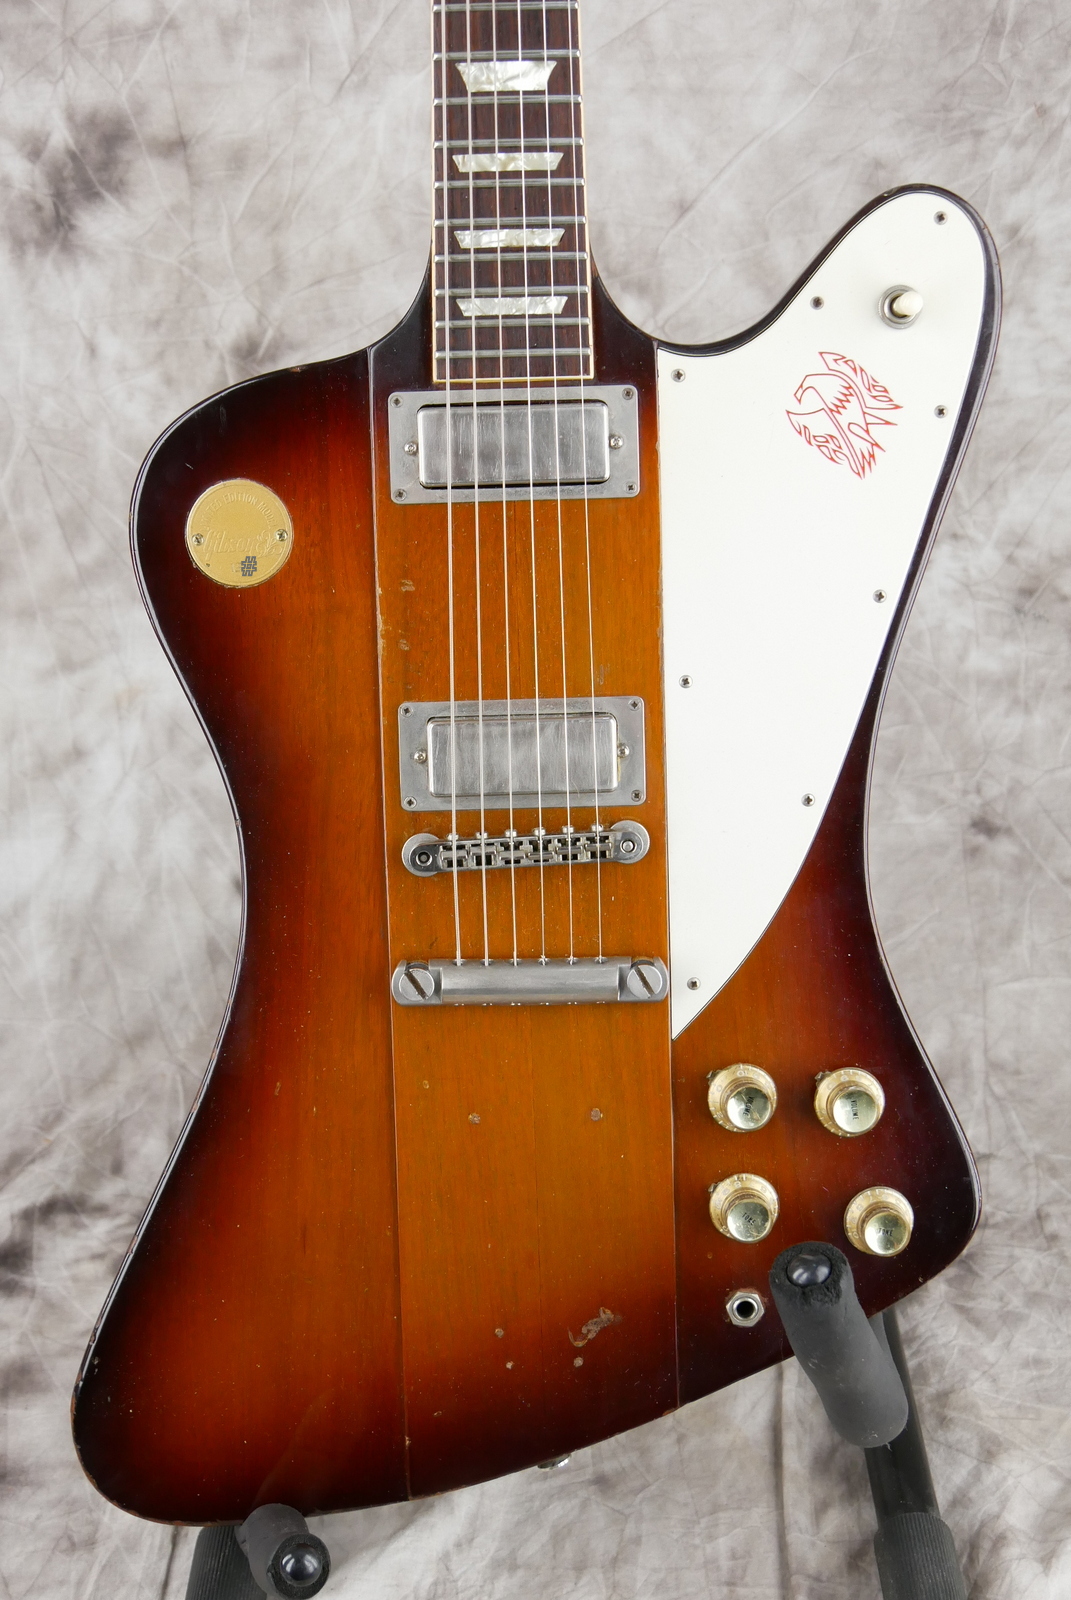 Gibson_Firebird_V_Medallion_limited_edition_sunburst_1972-003.JPG